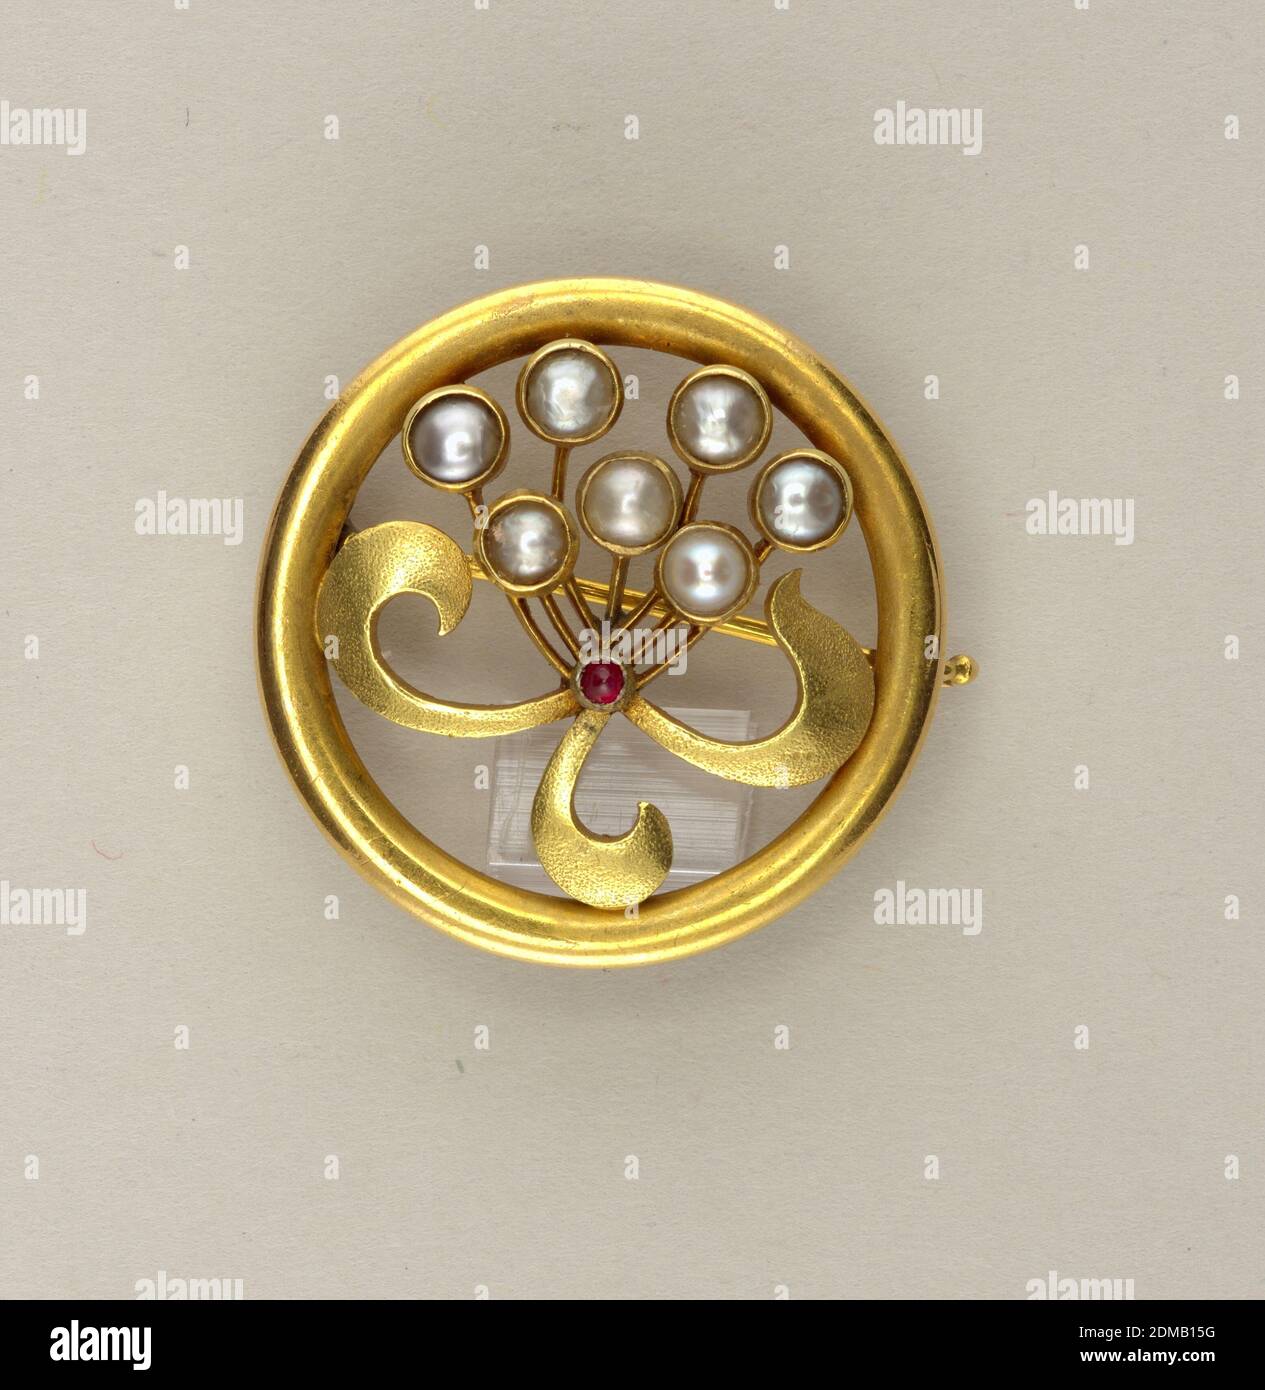 Broche avec perles, or, rubis, perles, circulaire, avec bouquet floral stylisé de perles; rubis au centre., Russie, ca. 1890, bijoux, arts décoratifs, broche, broche Banque D'Images